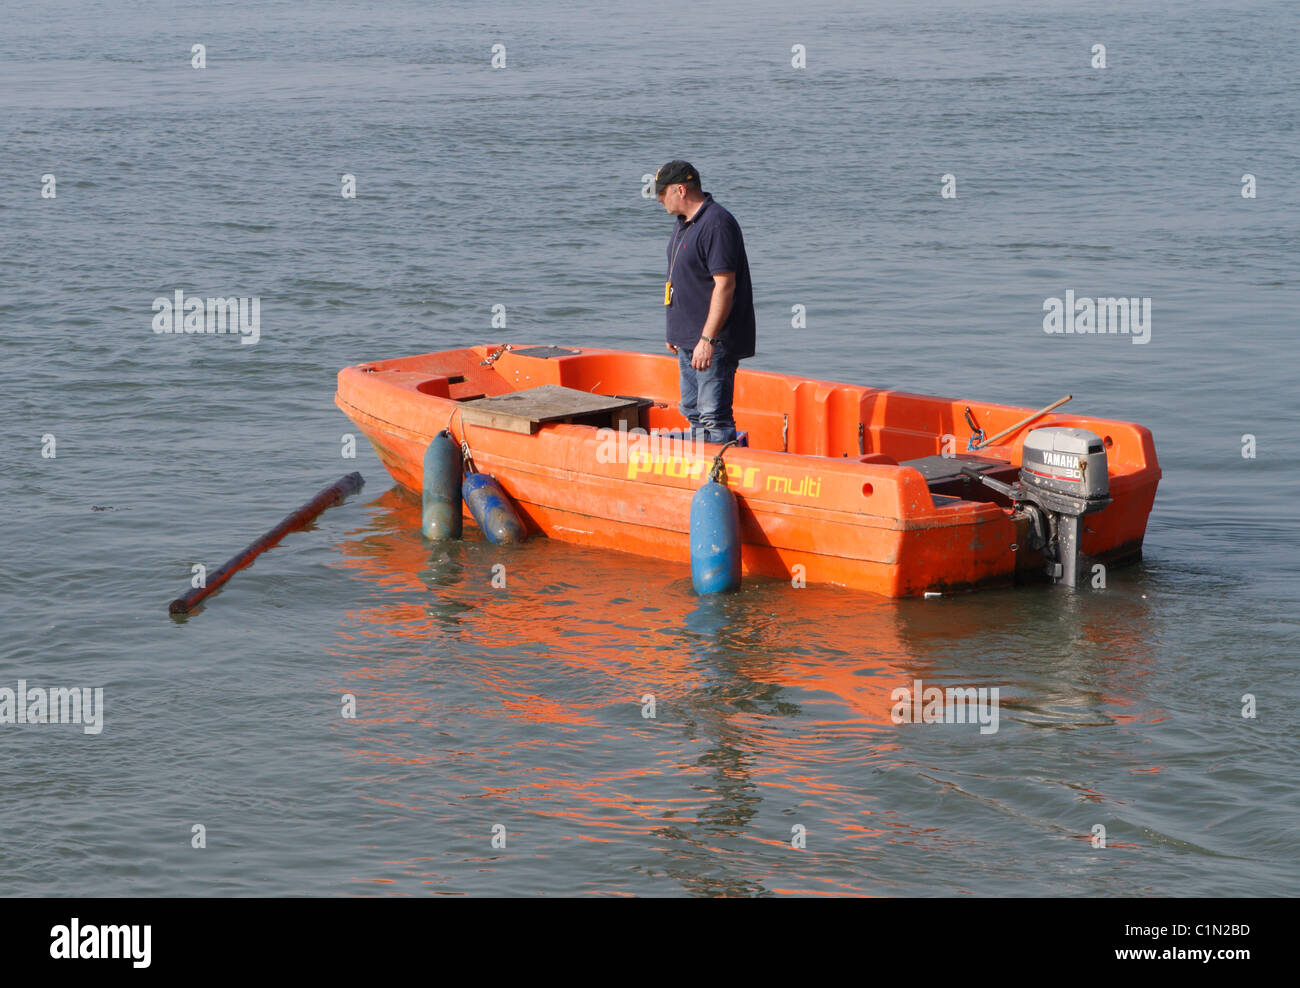 La collecte de bois flottant au large d'un port qui représente un danger pour les petits bateaux Banque D'Images